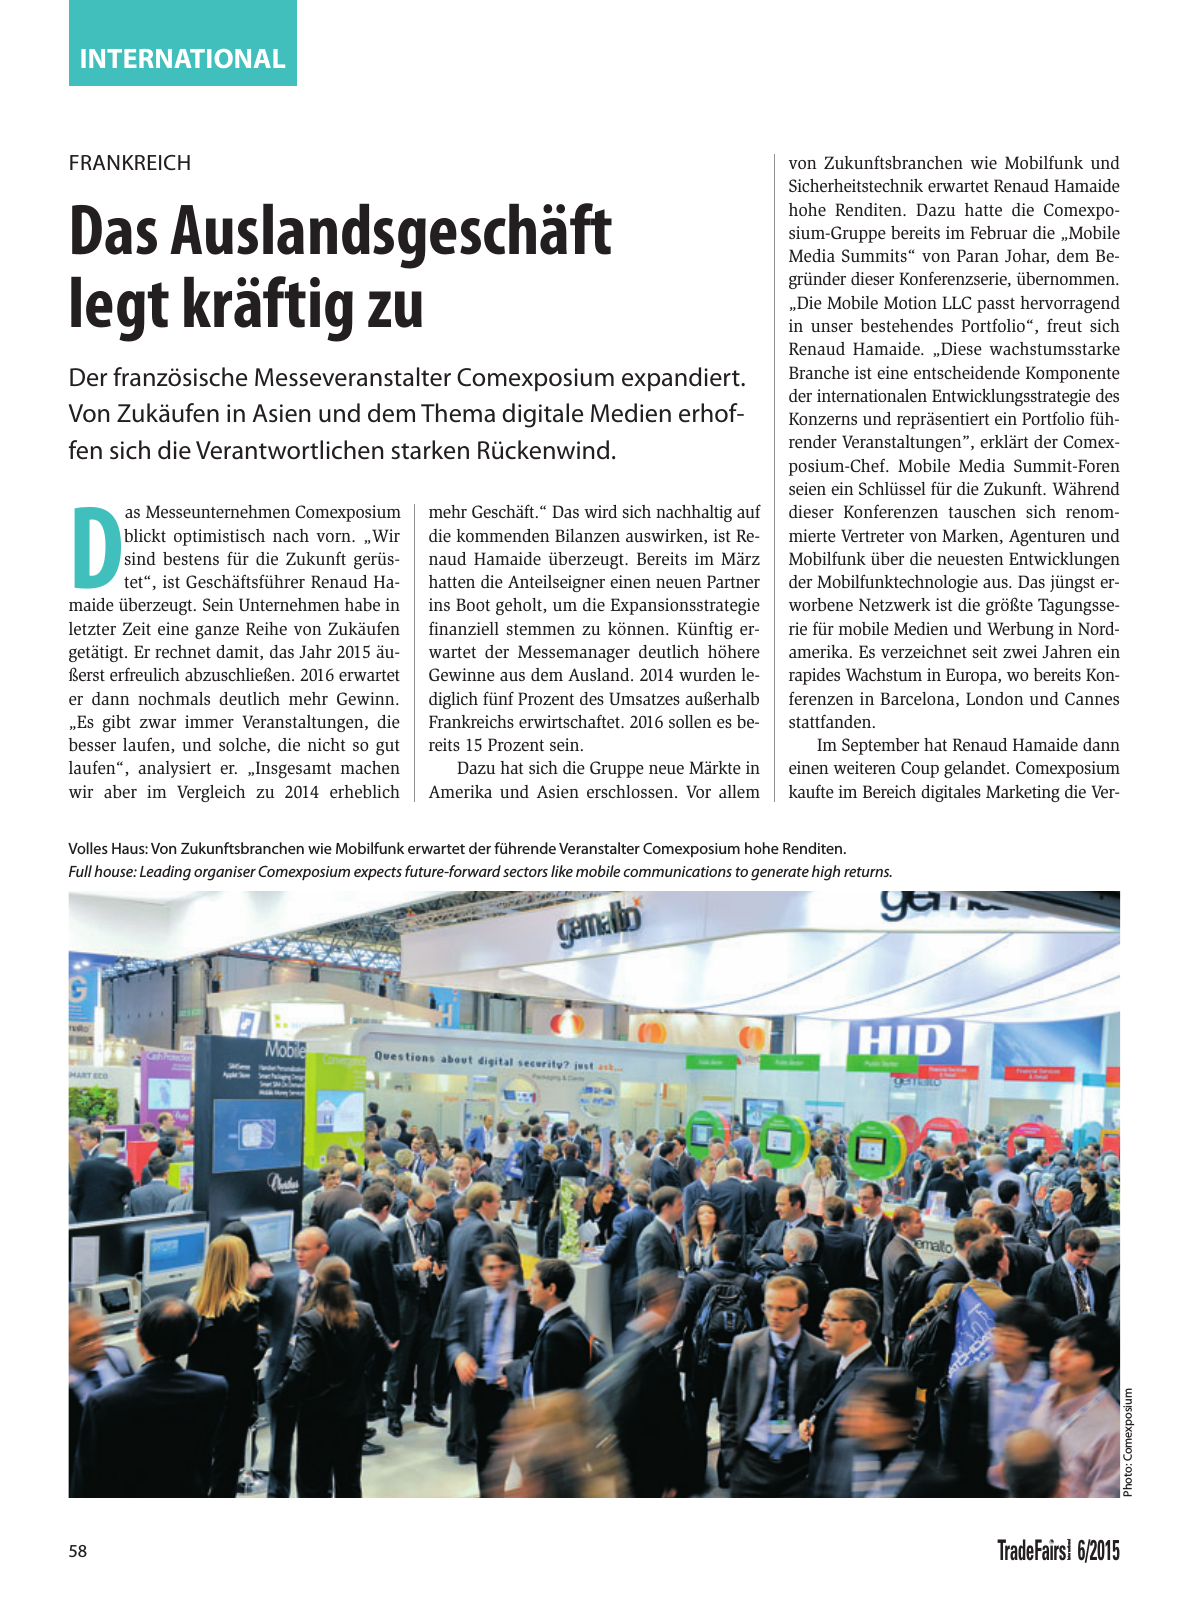 Vorschau TFI Trade-Fairs-International 06/2015 Seite 58